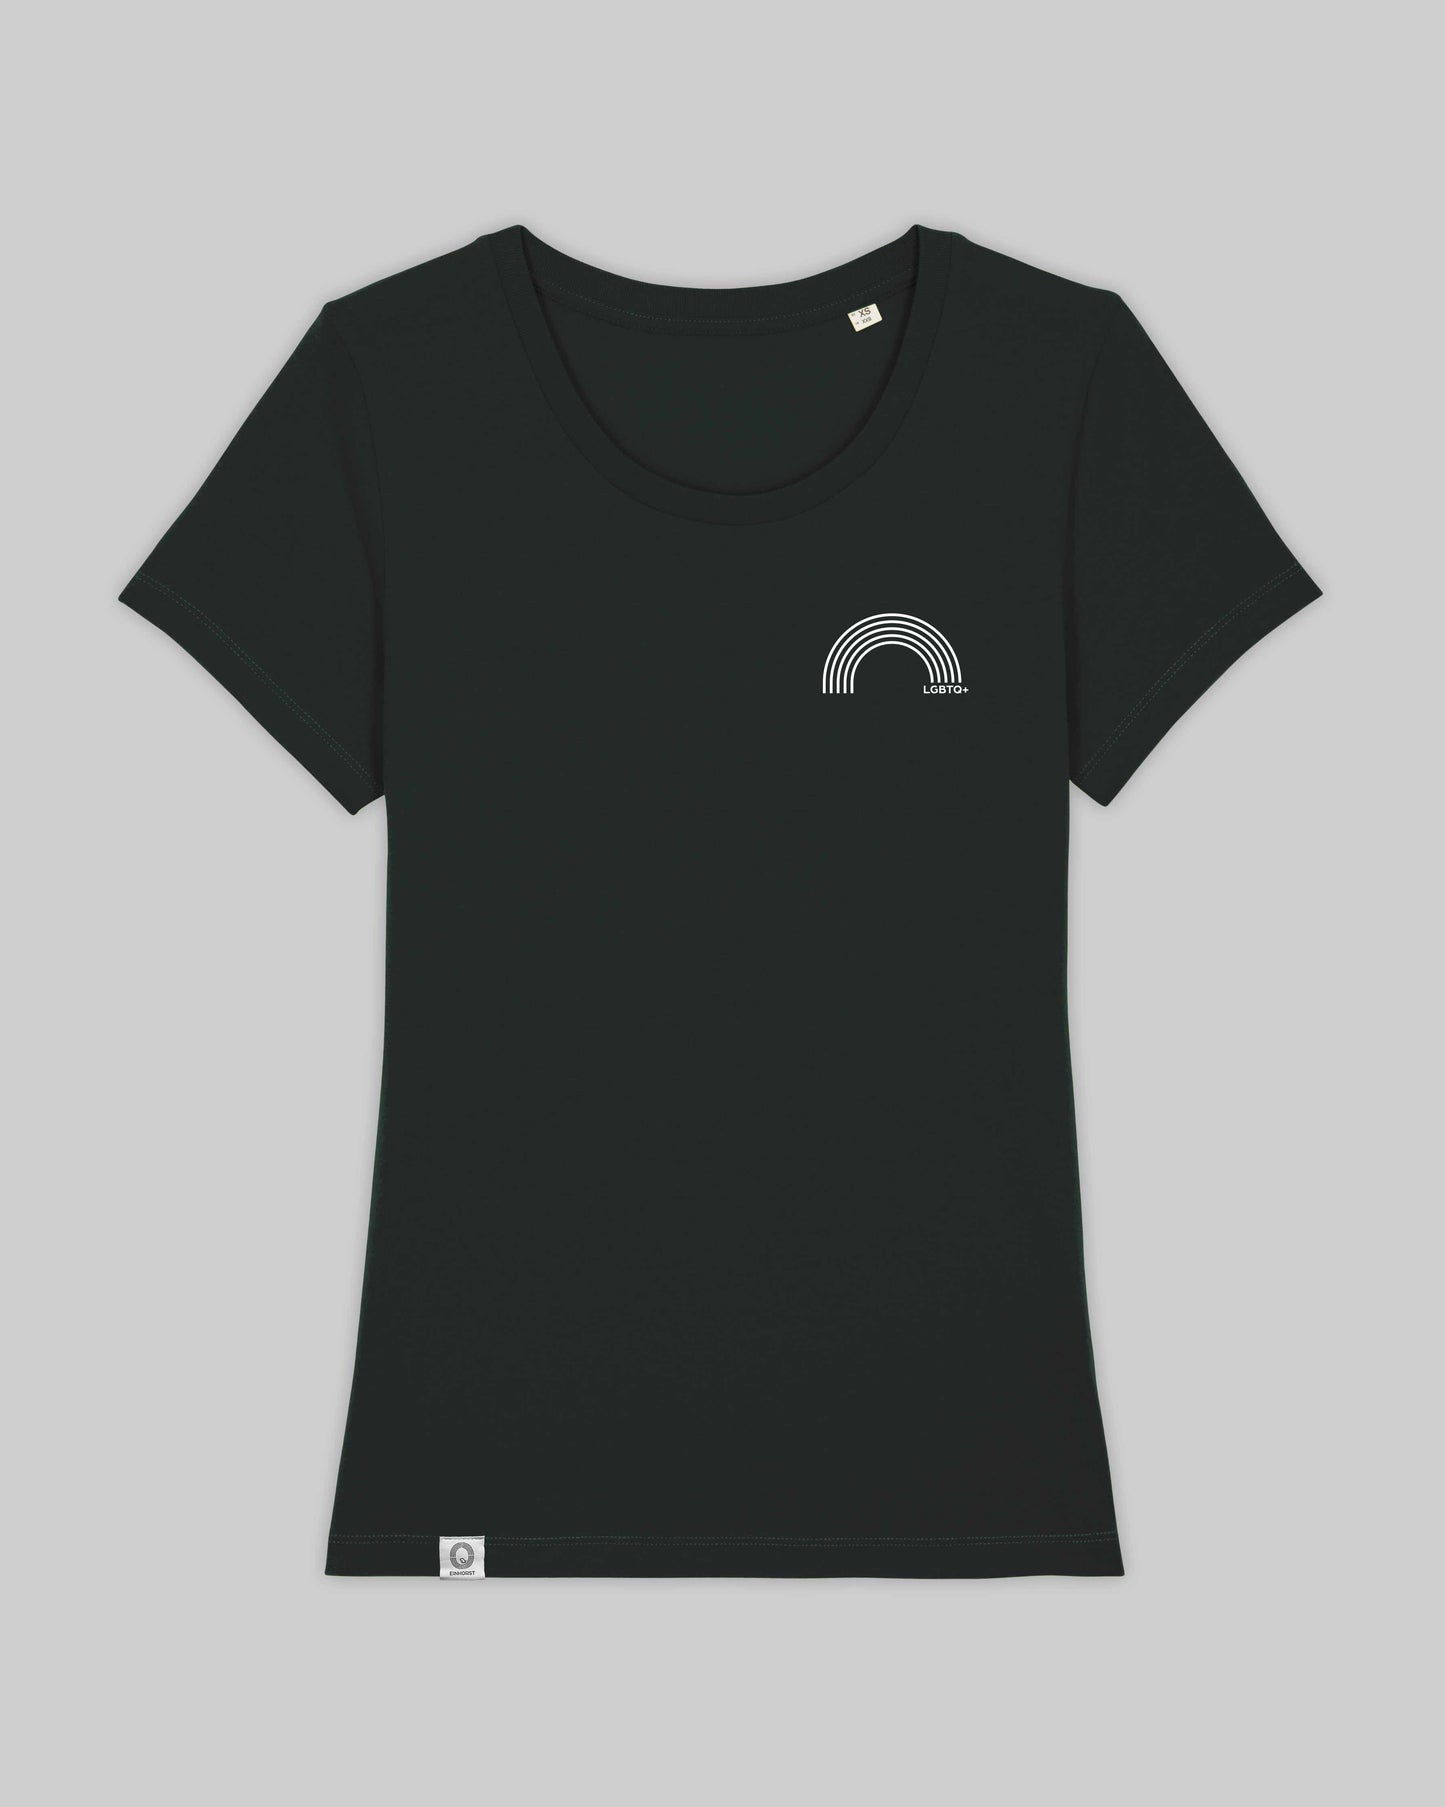 EINHORST® Organic Shirt tailliert in "Schwarz" mit dem Motiv "lgbtq+ Regenbogen" in der Kombination weißer Regenbogen mit weißer Schrift, Bild von Shirt von vorne